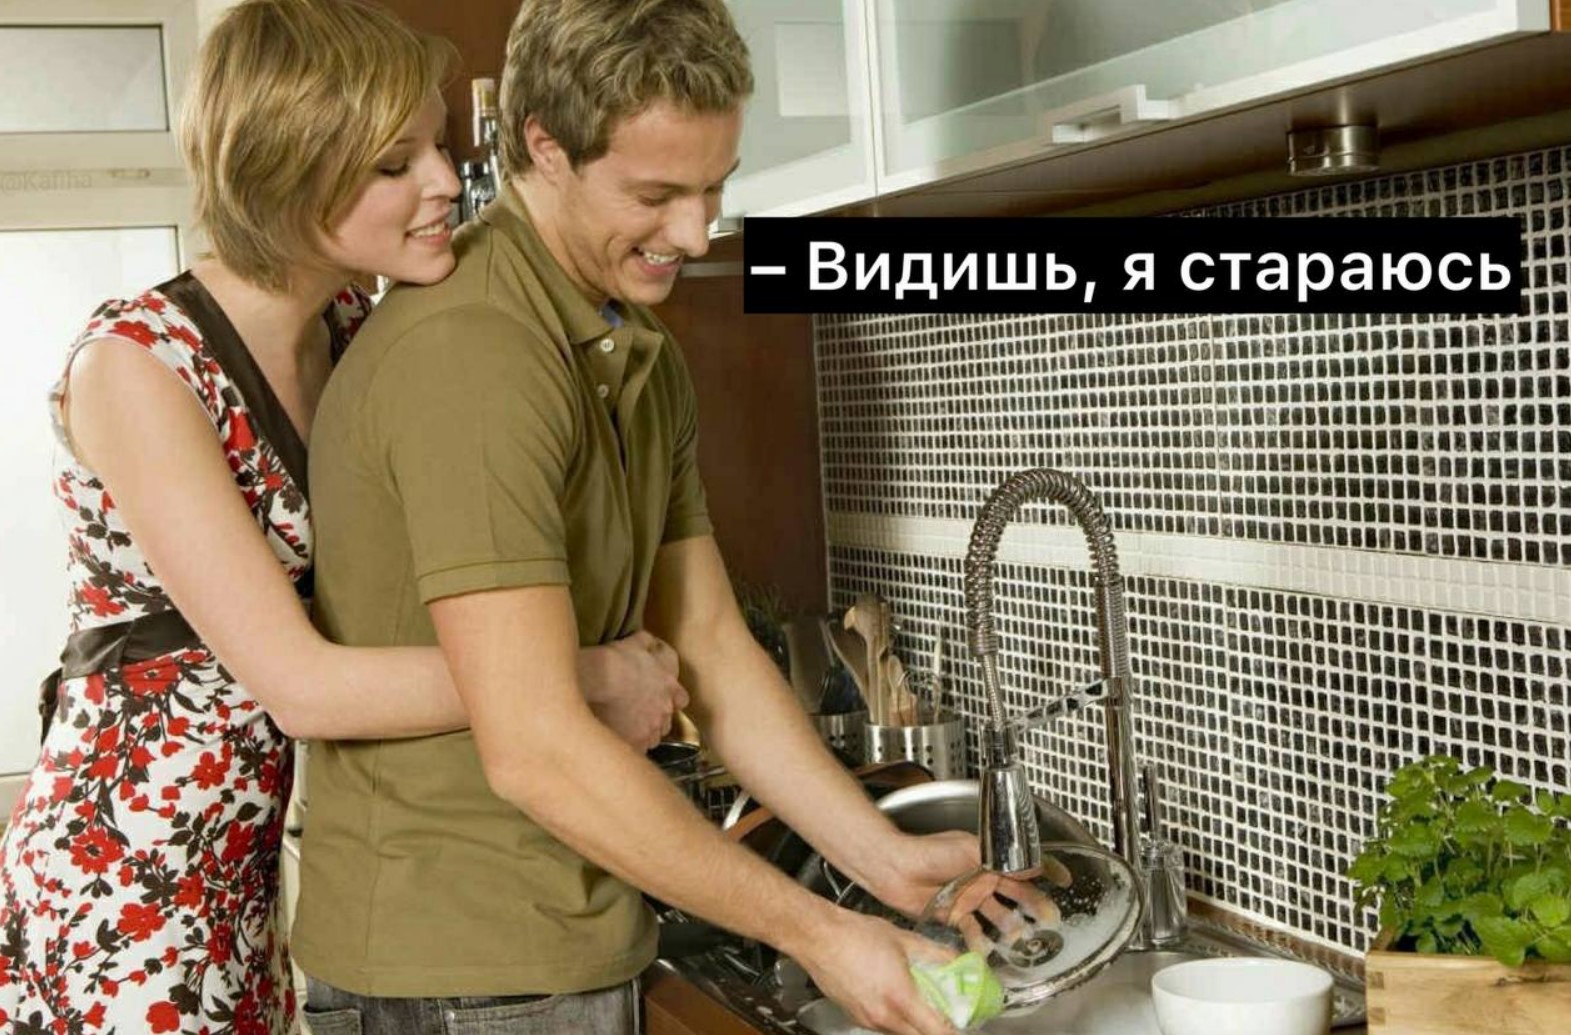 Женщины сексуально активны с мужчинами, которые моют посуду